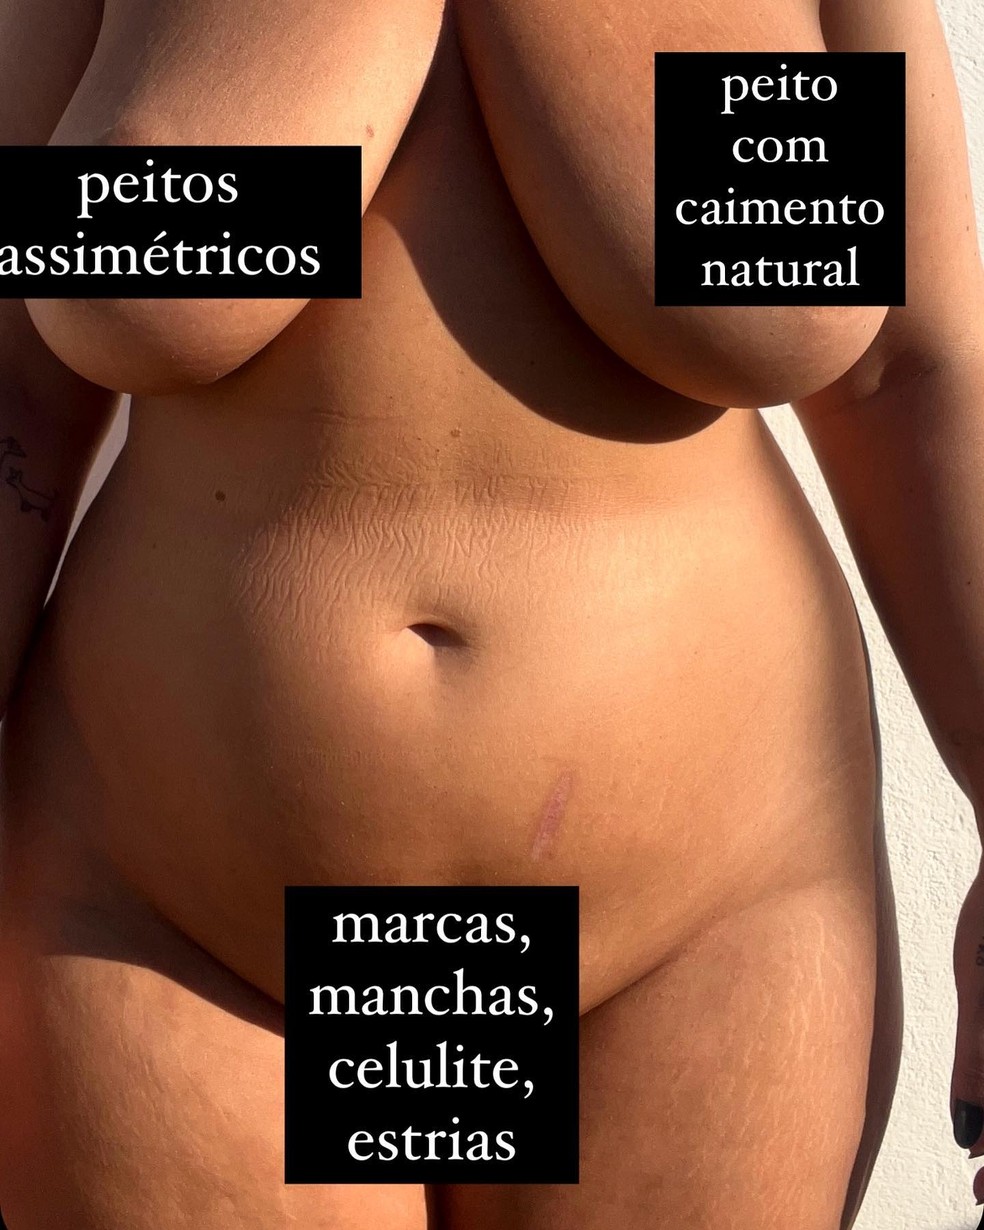 Letticia Munniz posa nua e mostra marcas — Foto: Reprodução/Instagram